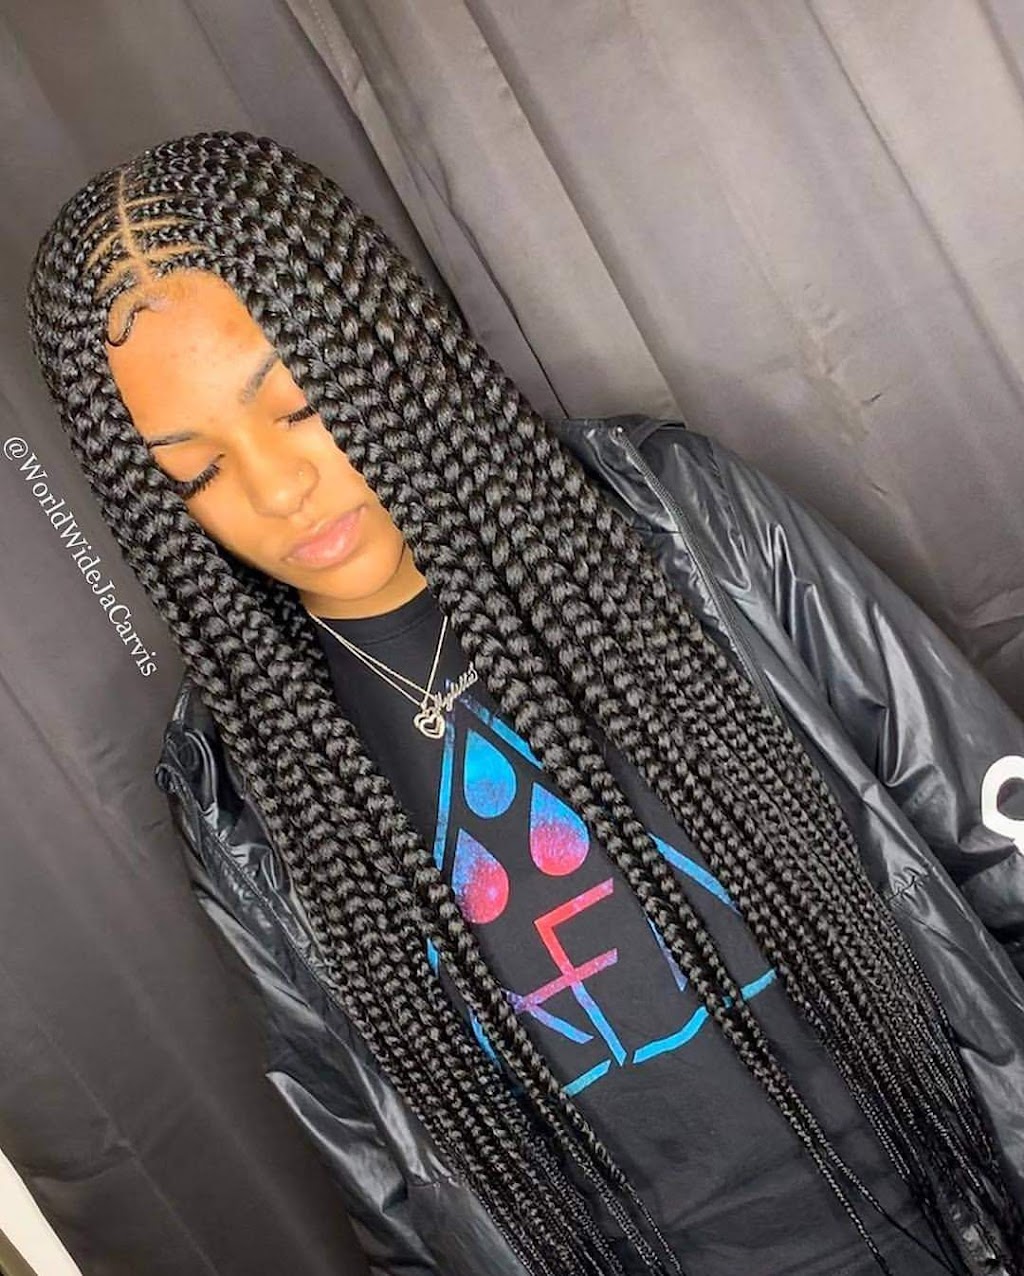 Meme African Hair Braiding | 838 66th Ave N, Brooklyn Center, MN 55430 | Phone: (612) 545-8878